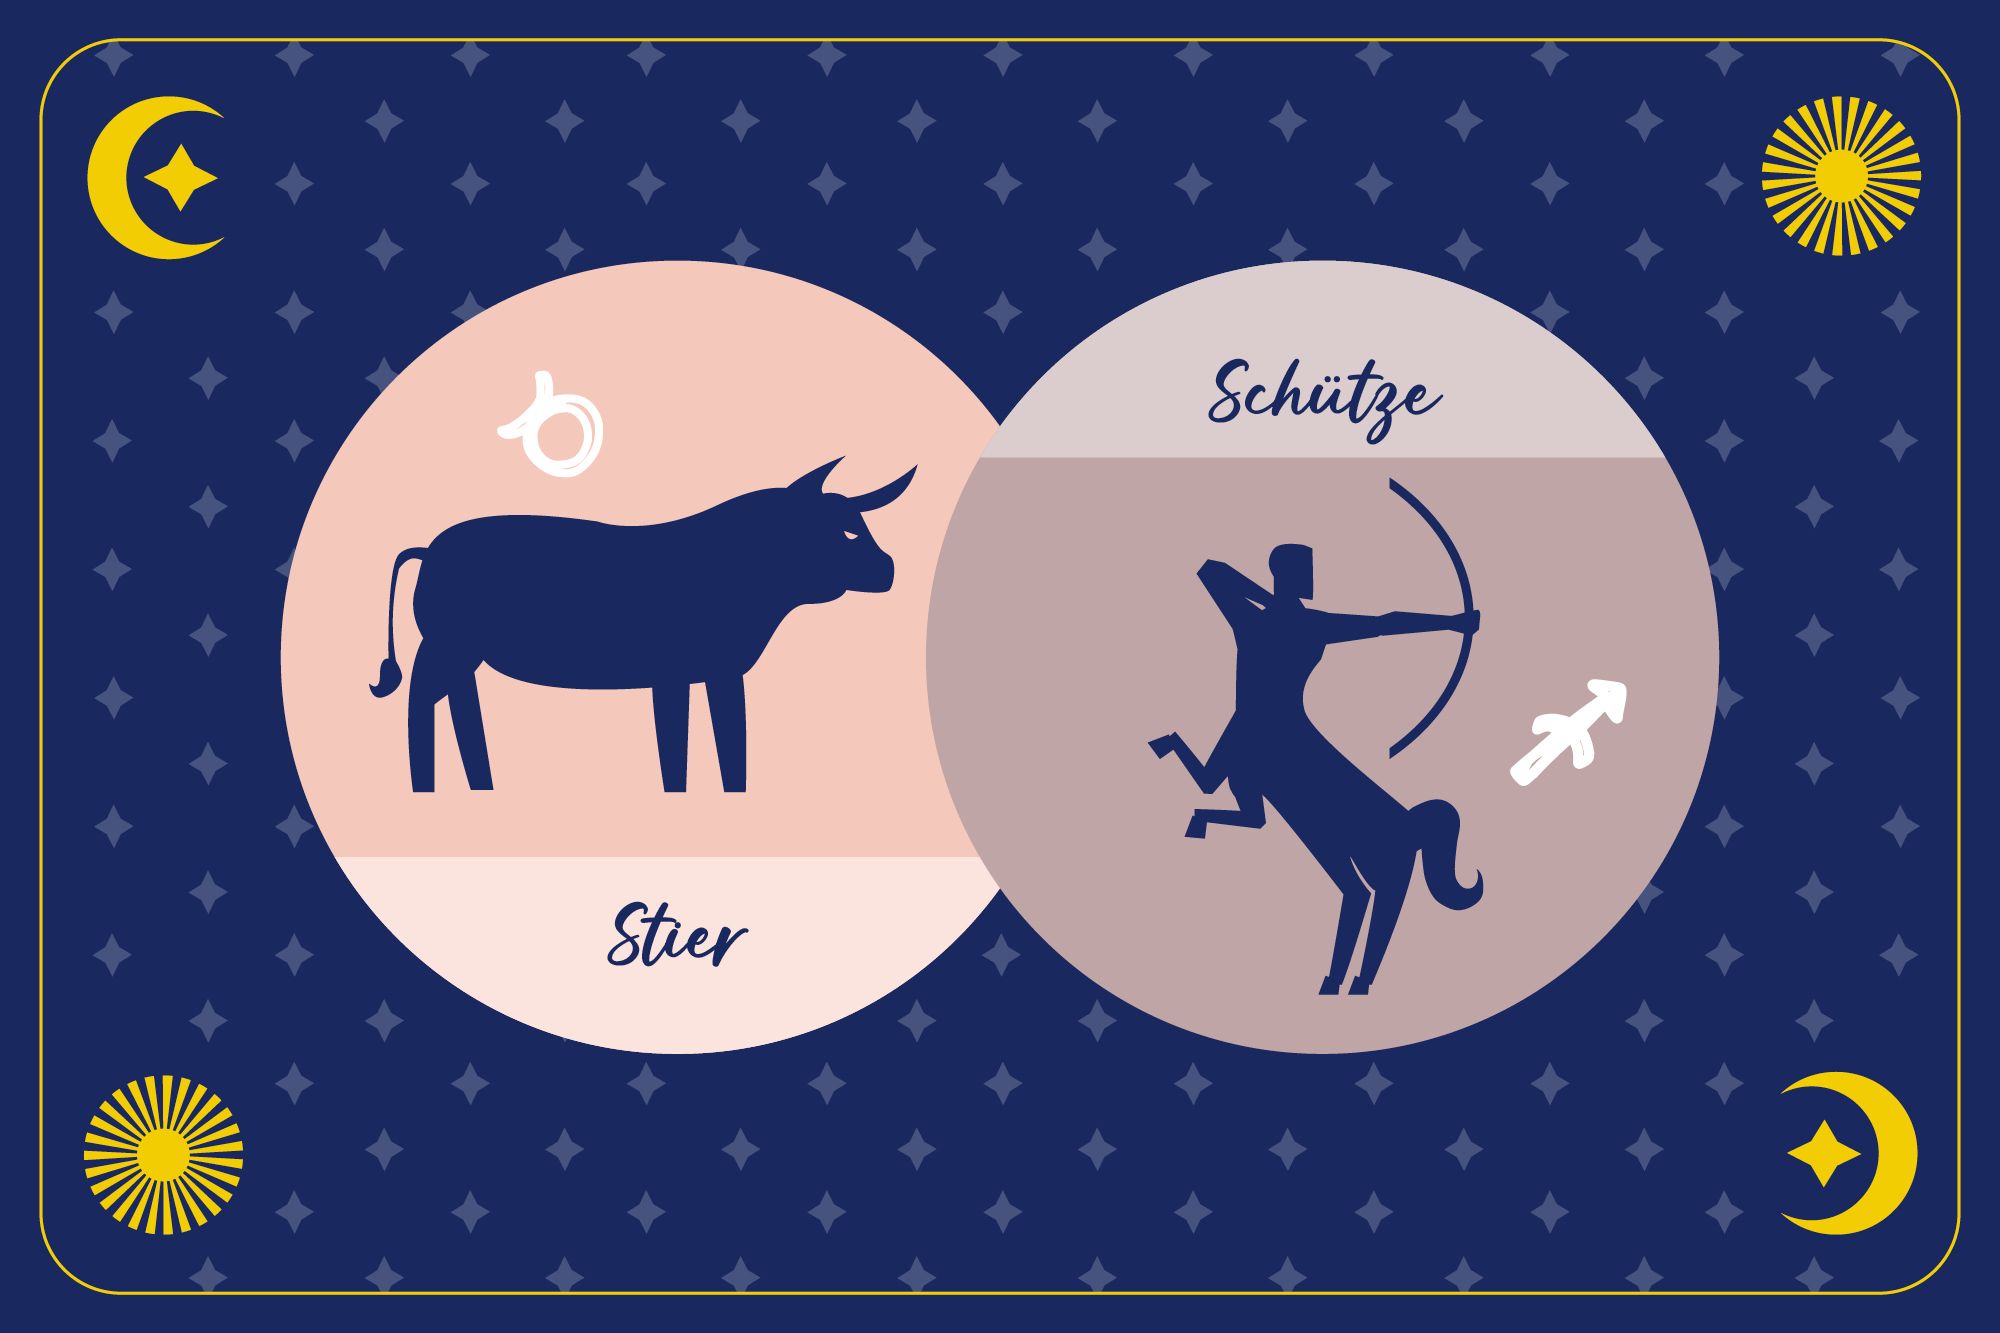 Sternzeichen Schütze in braunem Kreis und Sternzeichen Stier in pfirsichfarbenem Kreis auf dunkelblauem Hintergrund mit Mond, Sonne und Sternen